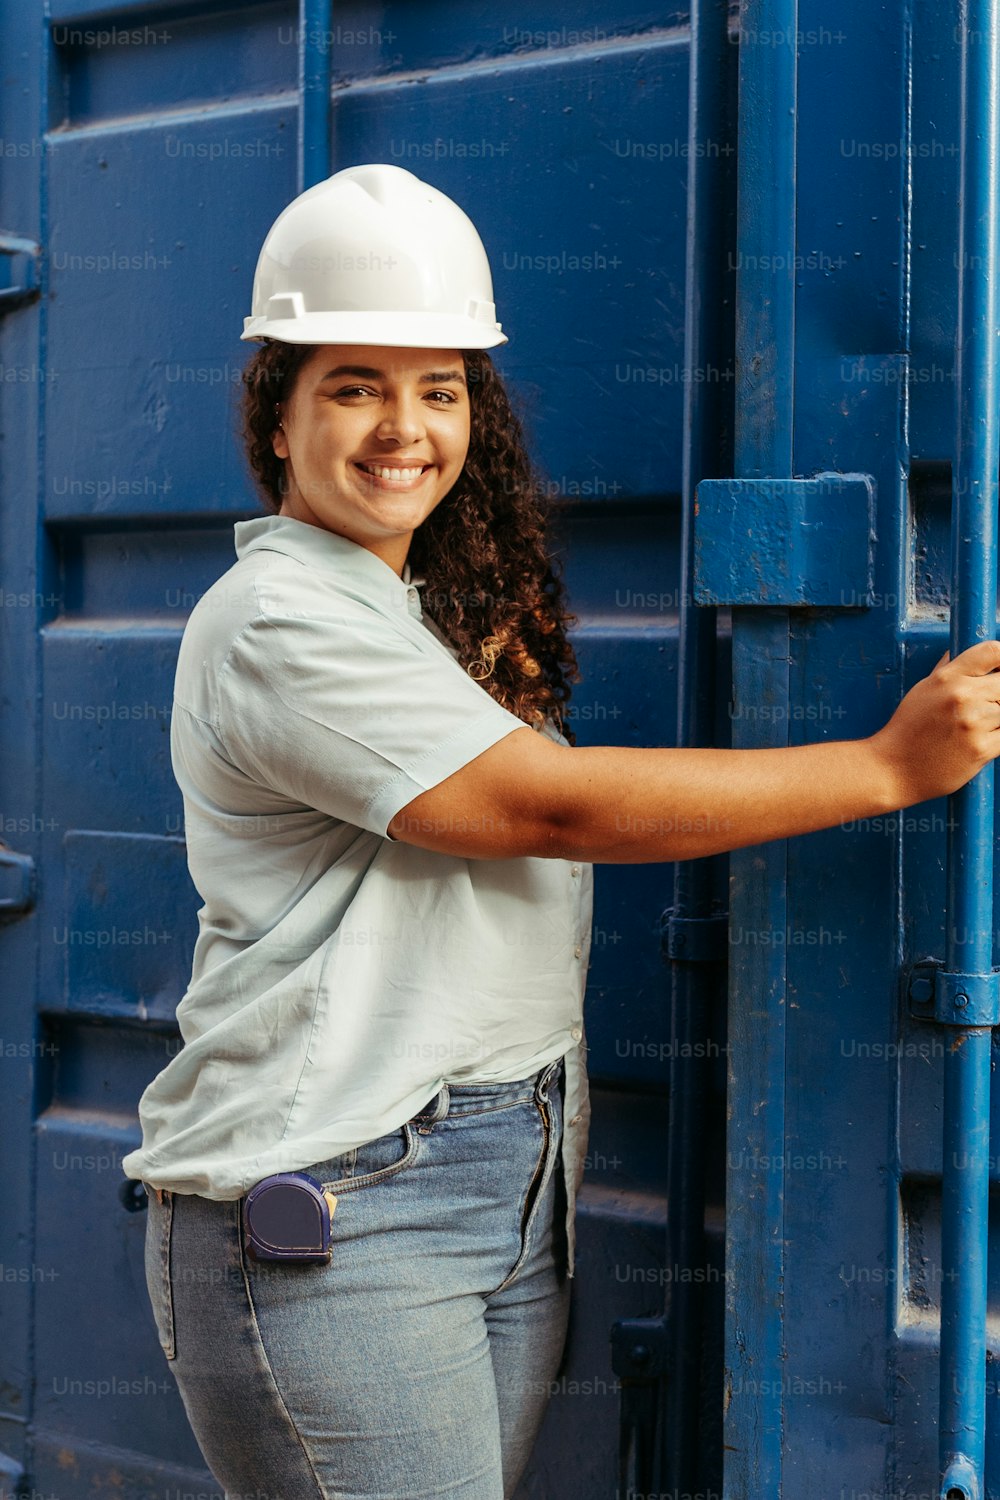 Une femme portant un casque de sécurité blanc appuyée contre un mur bleu